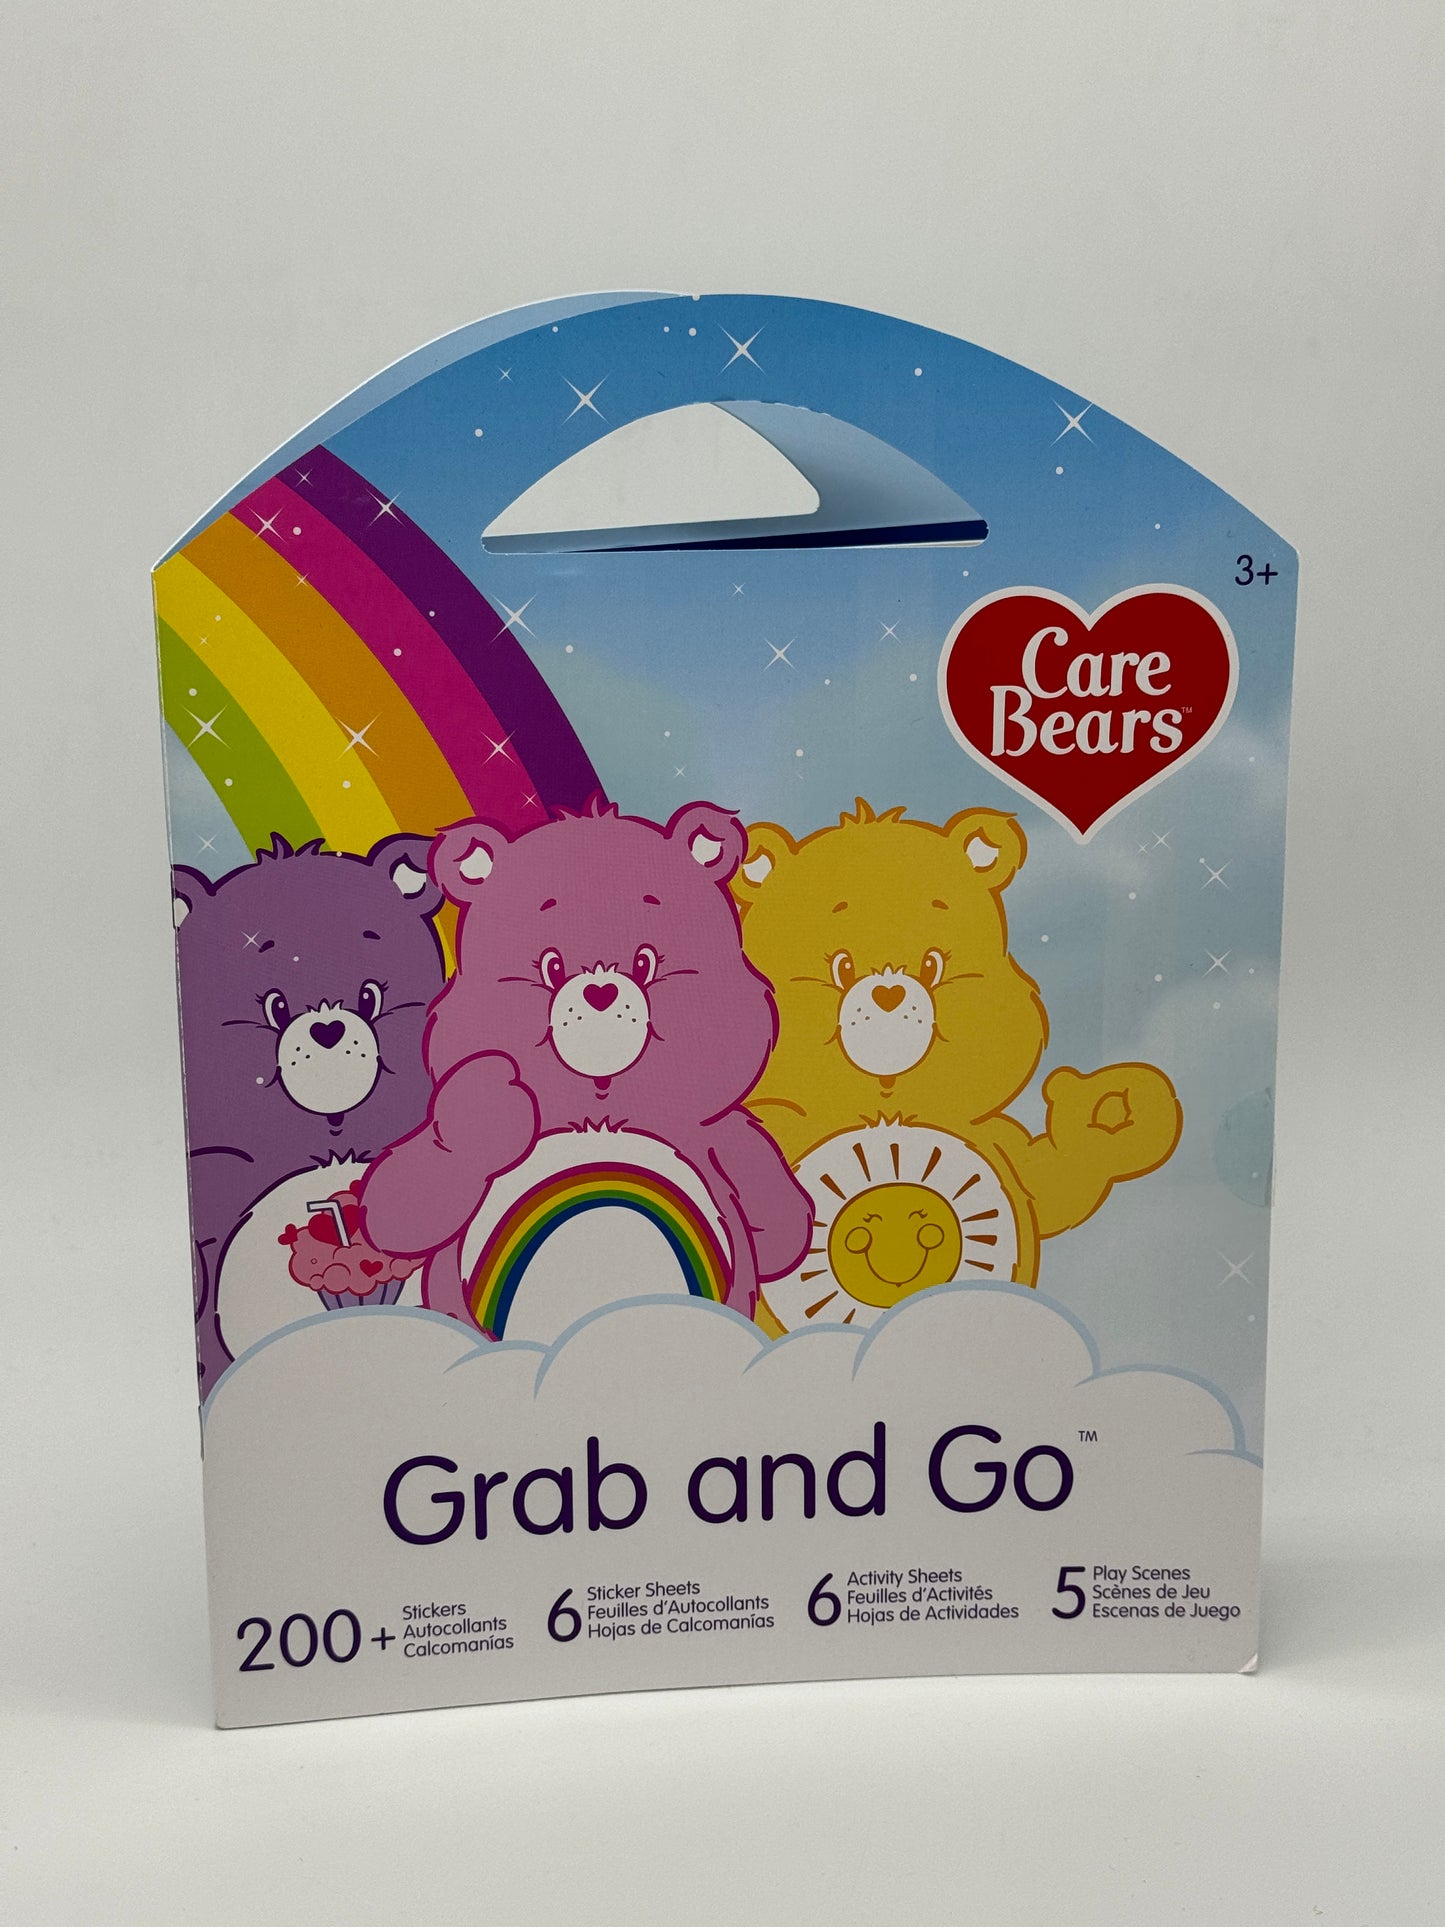 Care Bears Glücksbärchis "Grab and Go" Stickeralbum mit über 200 Sticker uvm.